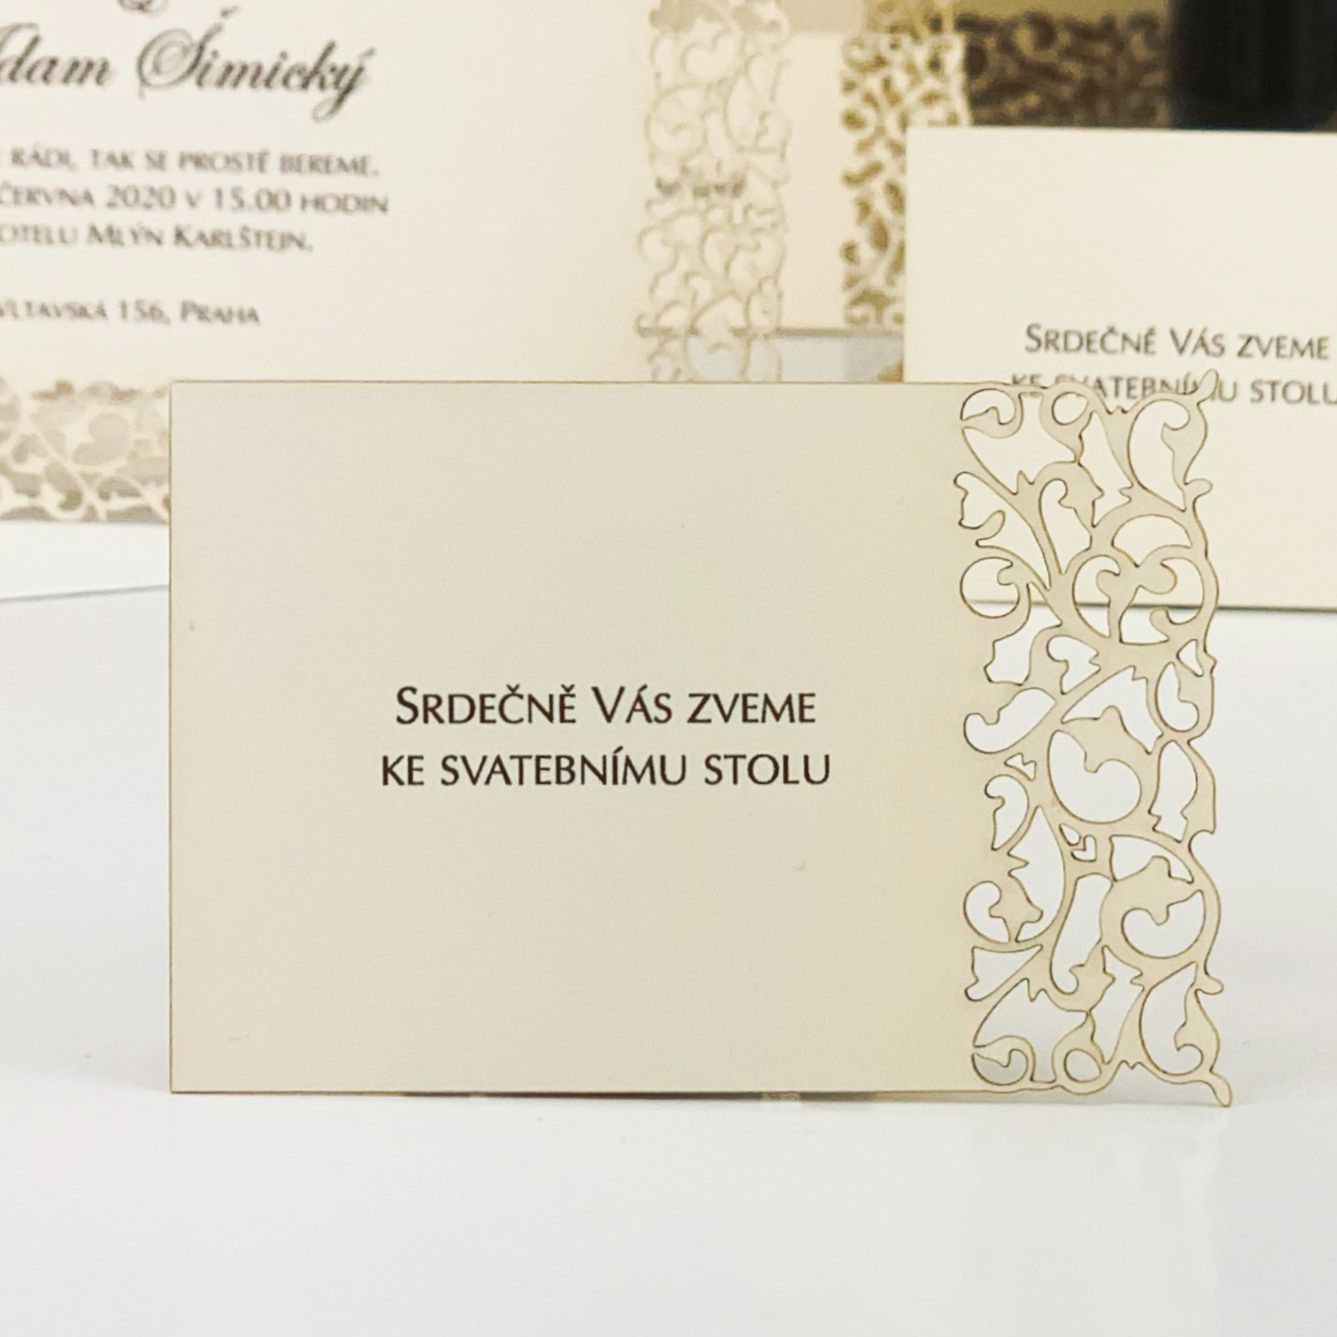 Pozvánka, informační karta – z béžového papíru s krajkovým motivem, vytvořeným digitálním výsekem, 80 × 55 mm, jednostranná.